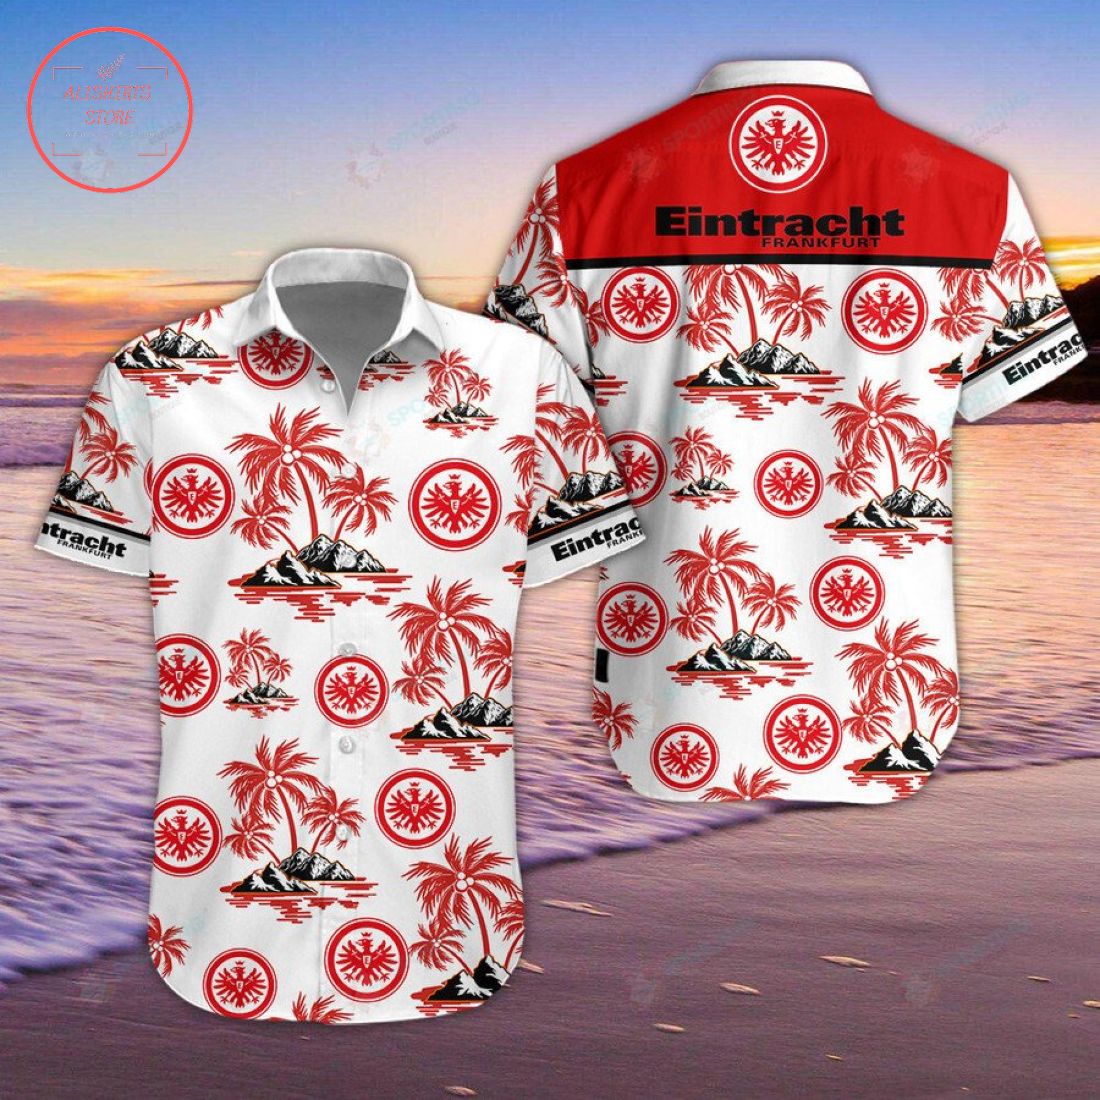 Eintracht Frankfurt Hawaiian Shirt and Shorts